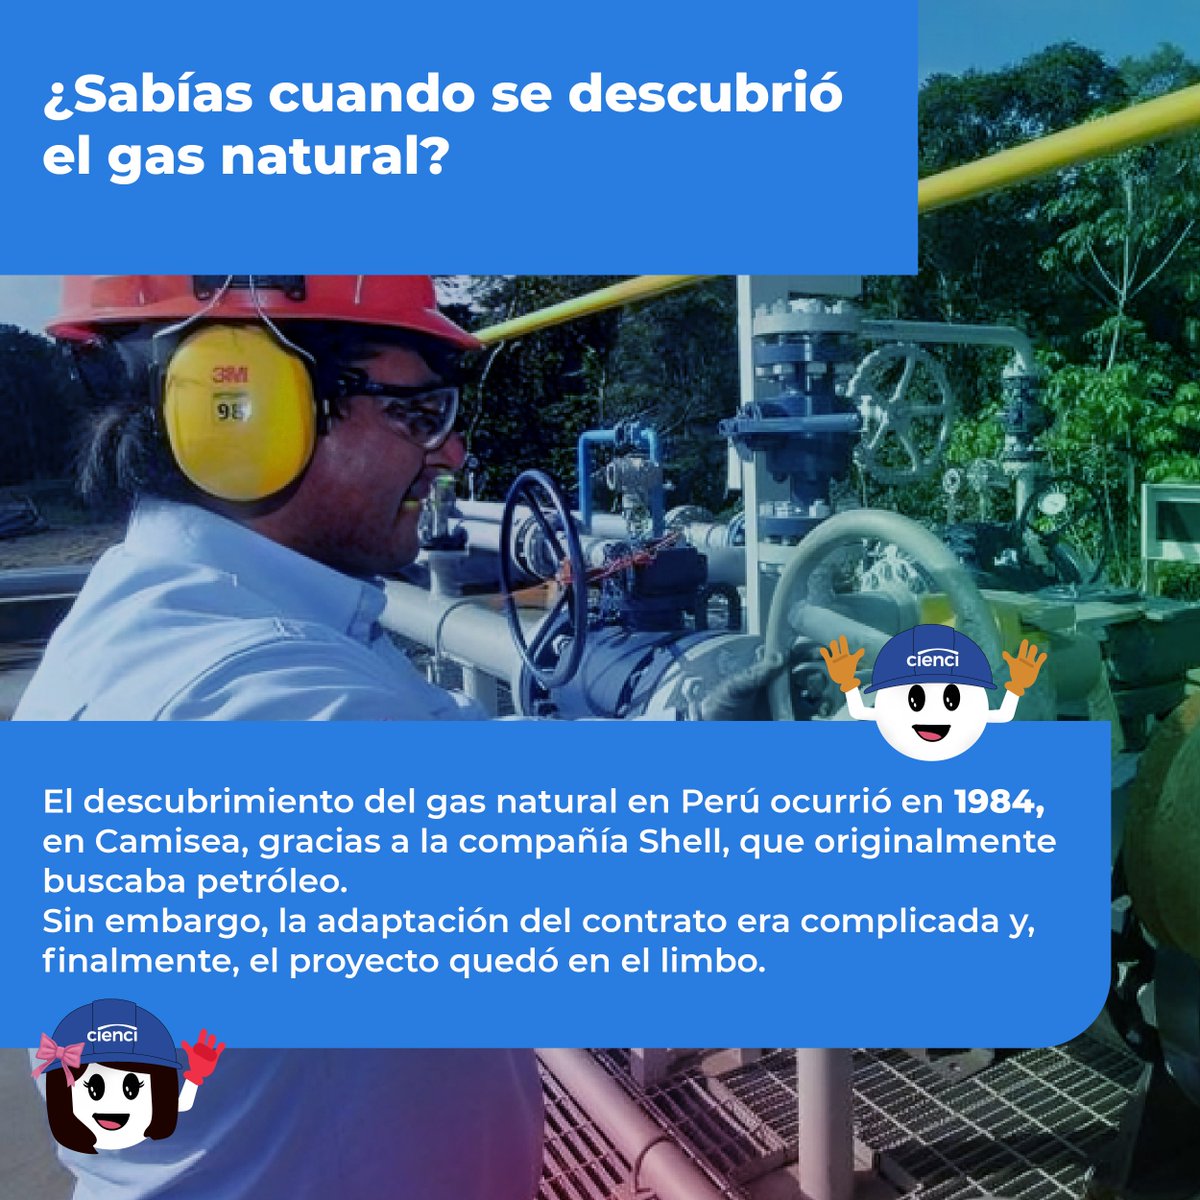 #datodeldía
¿Sabías cuando se descubrió el gas natural?
El descubrimiento del gas natural en Perú ocurrió en 1984, en Camisea.

Mantente informado con nosotros 🙌

#datodehoy #Informate #InstalacióndeGasNatural #perú2024